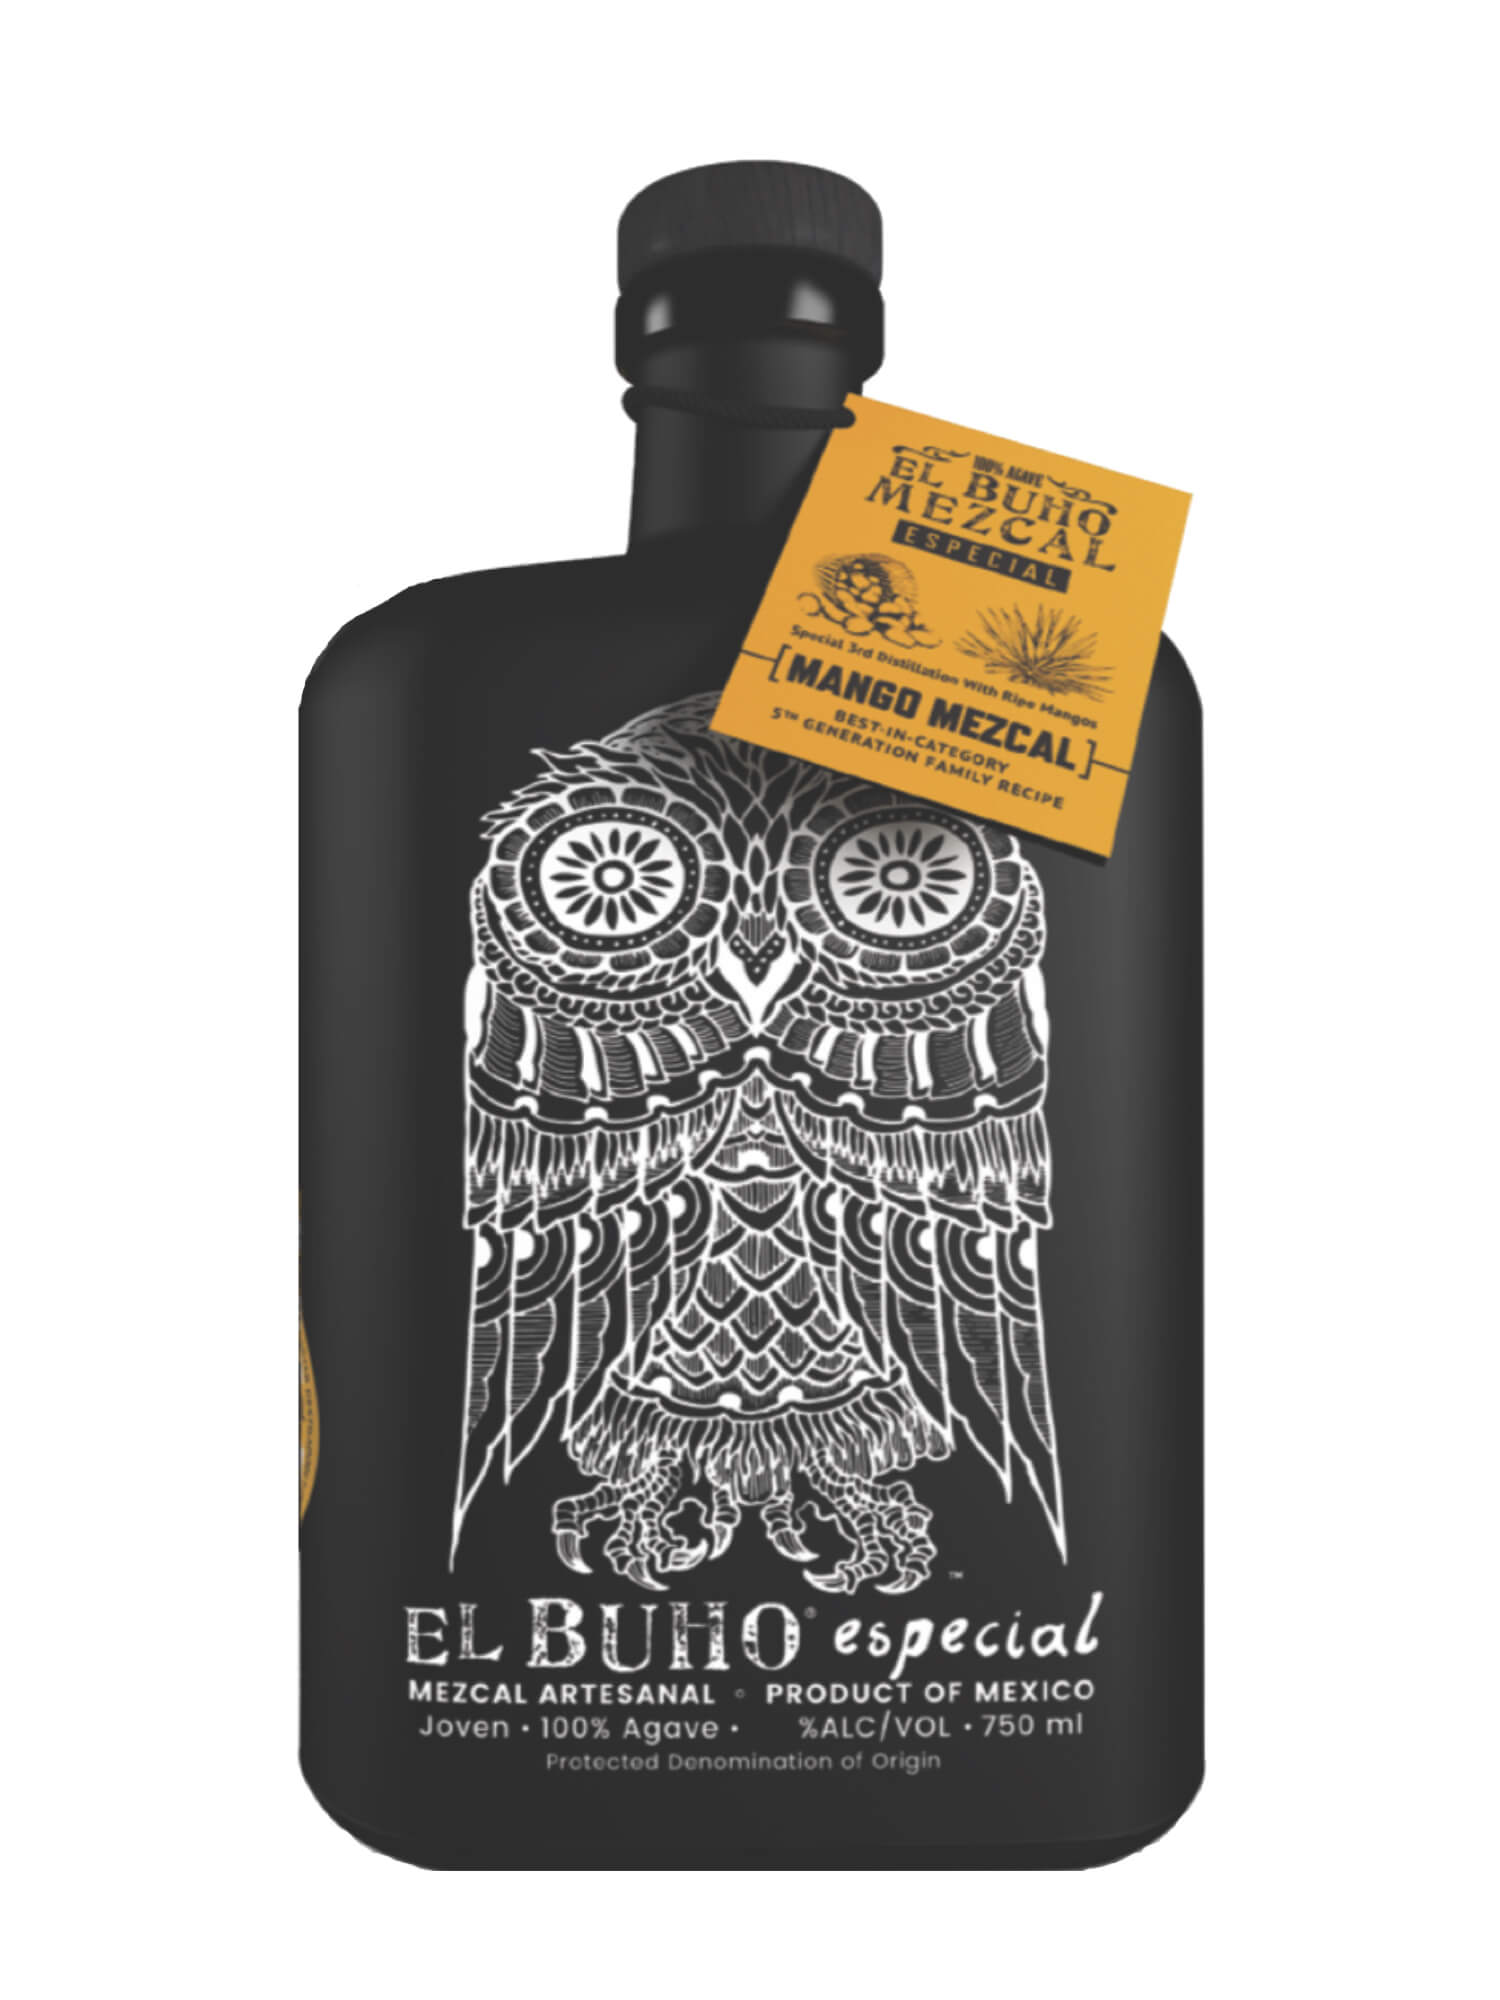 El Buho Mango Mezcal bottle